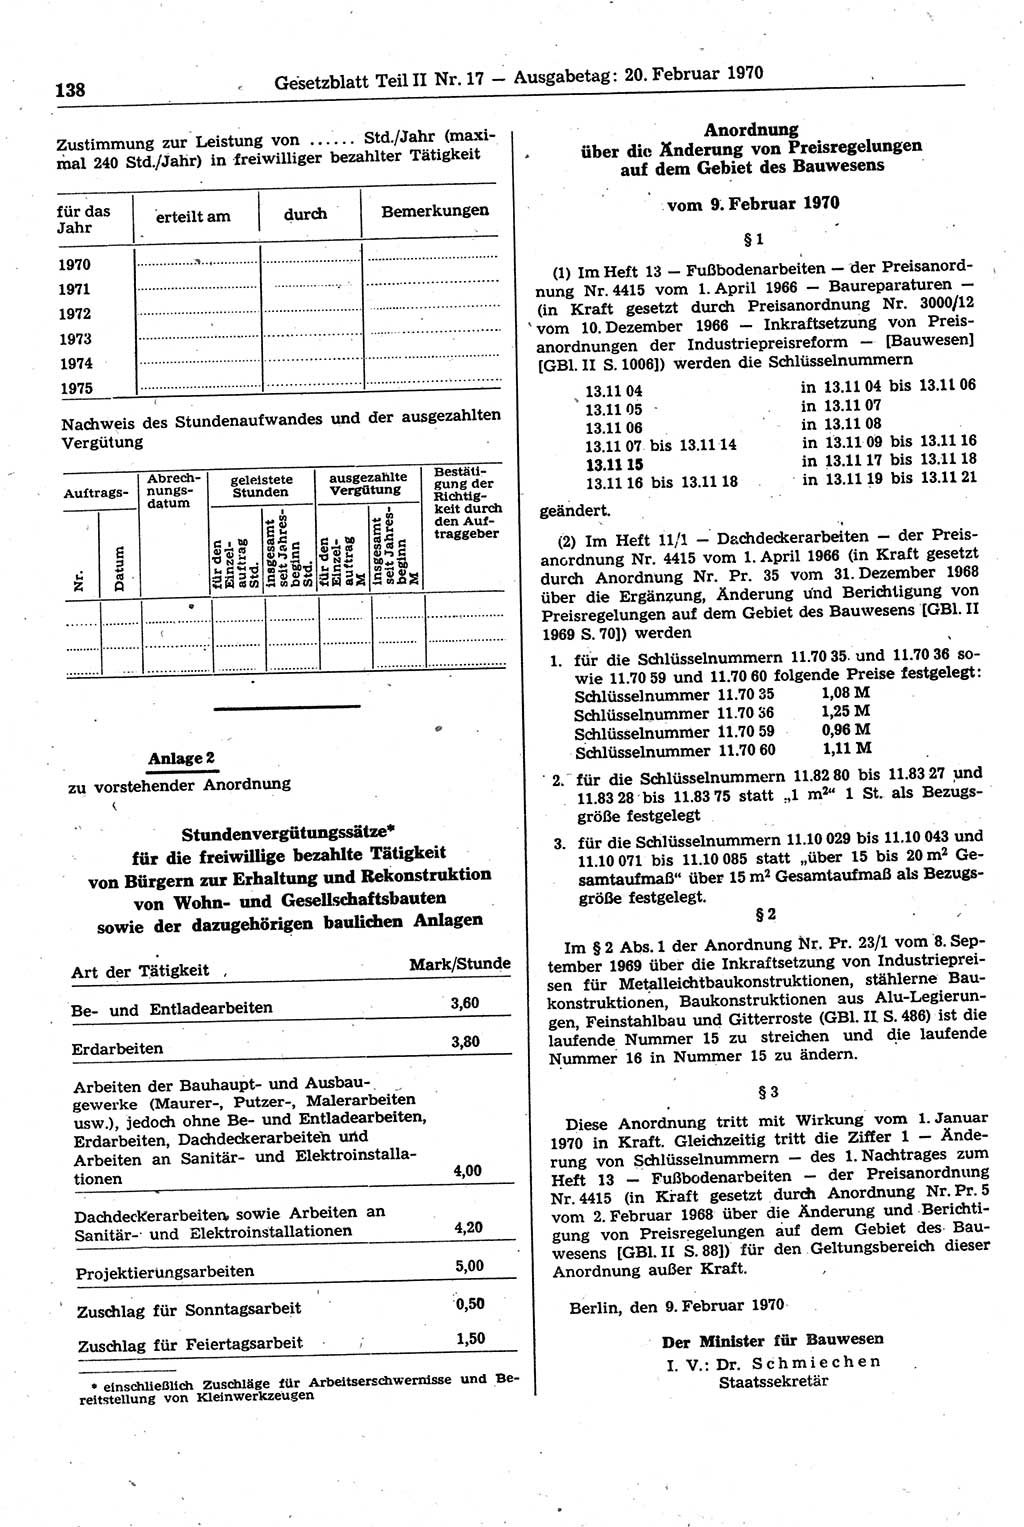 Gesetzblatt (GBl.) der Deutschen Demokratischen Republik (DDR) Teil ⅠⅠ 1970, Seite 138 (GBl. DDR ⅠⅠ 1970, S. 138)